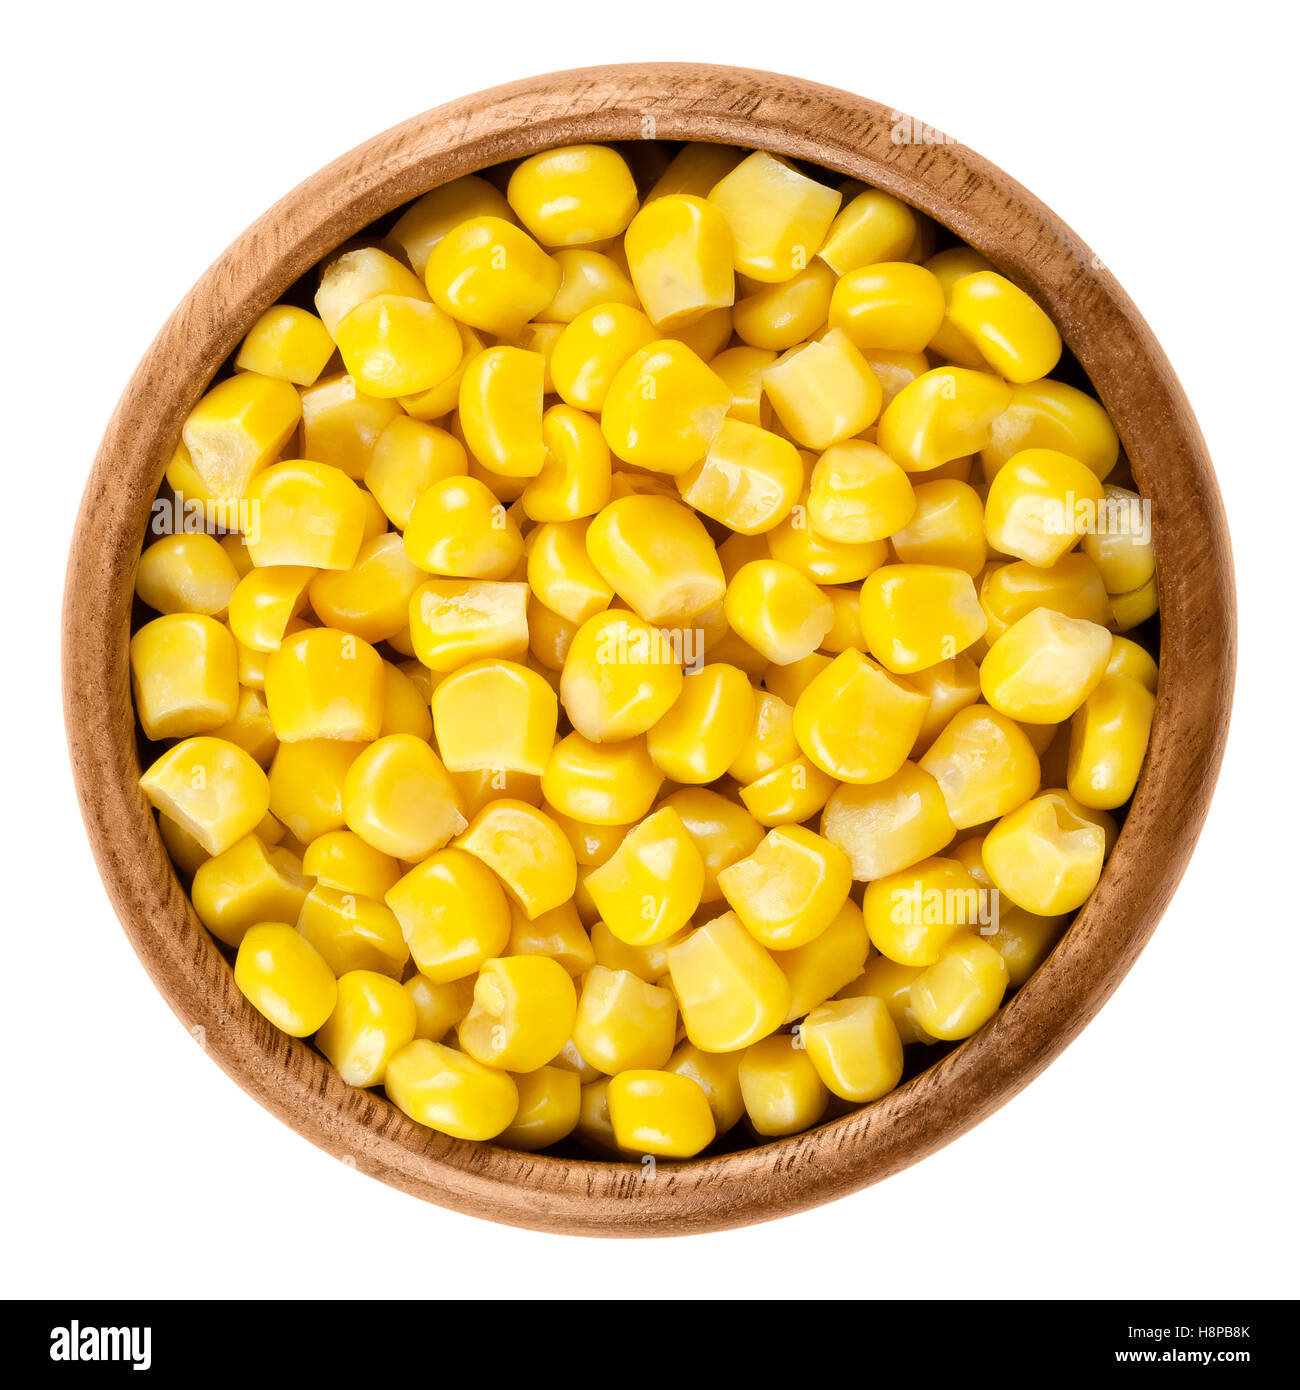 Süße Maiskörner in Holzschale über weiß. Dosen gelb Gemüse Mais, Zea Mays, auch genannt Zucker oder Pol Mais gekocht. Stockfoto